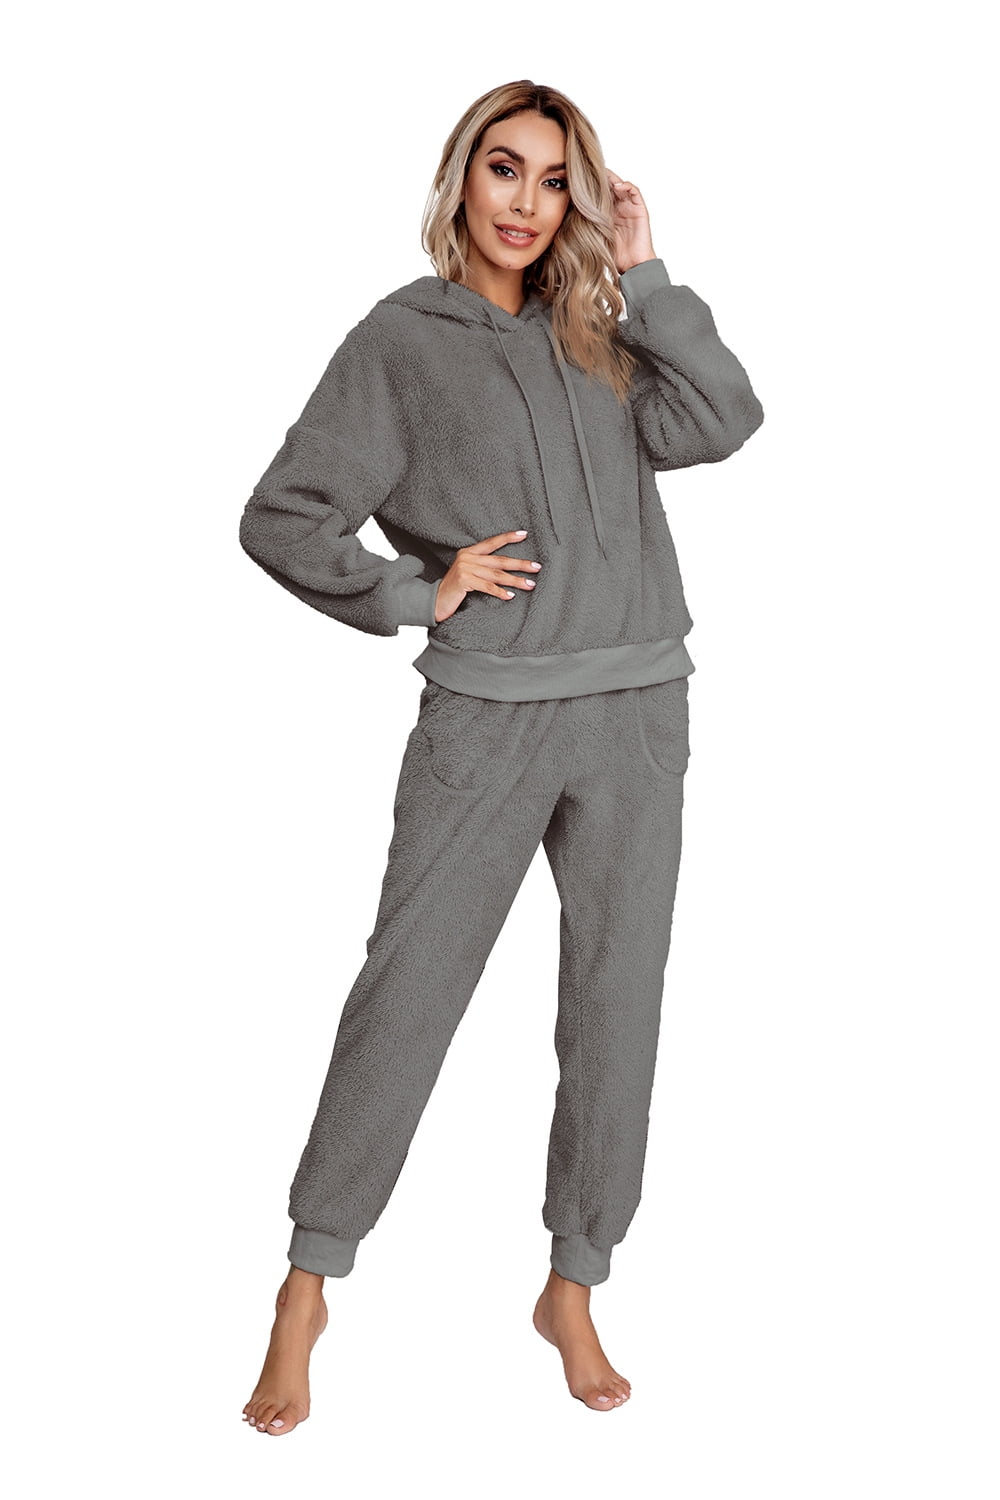 Womens Fuzzy Sherpa Fleece Pajamas Set, Long Sleeve Hoodies Pajama